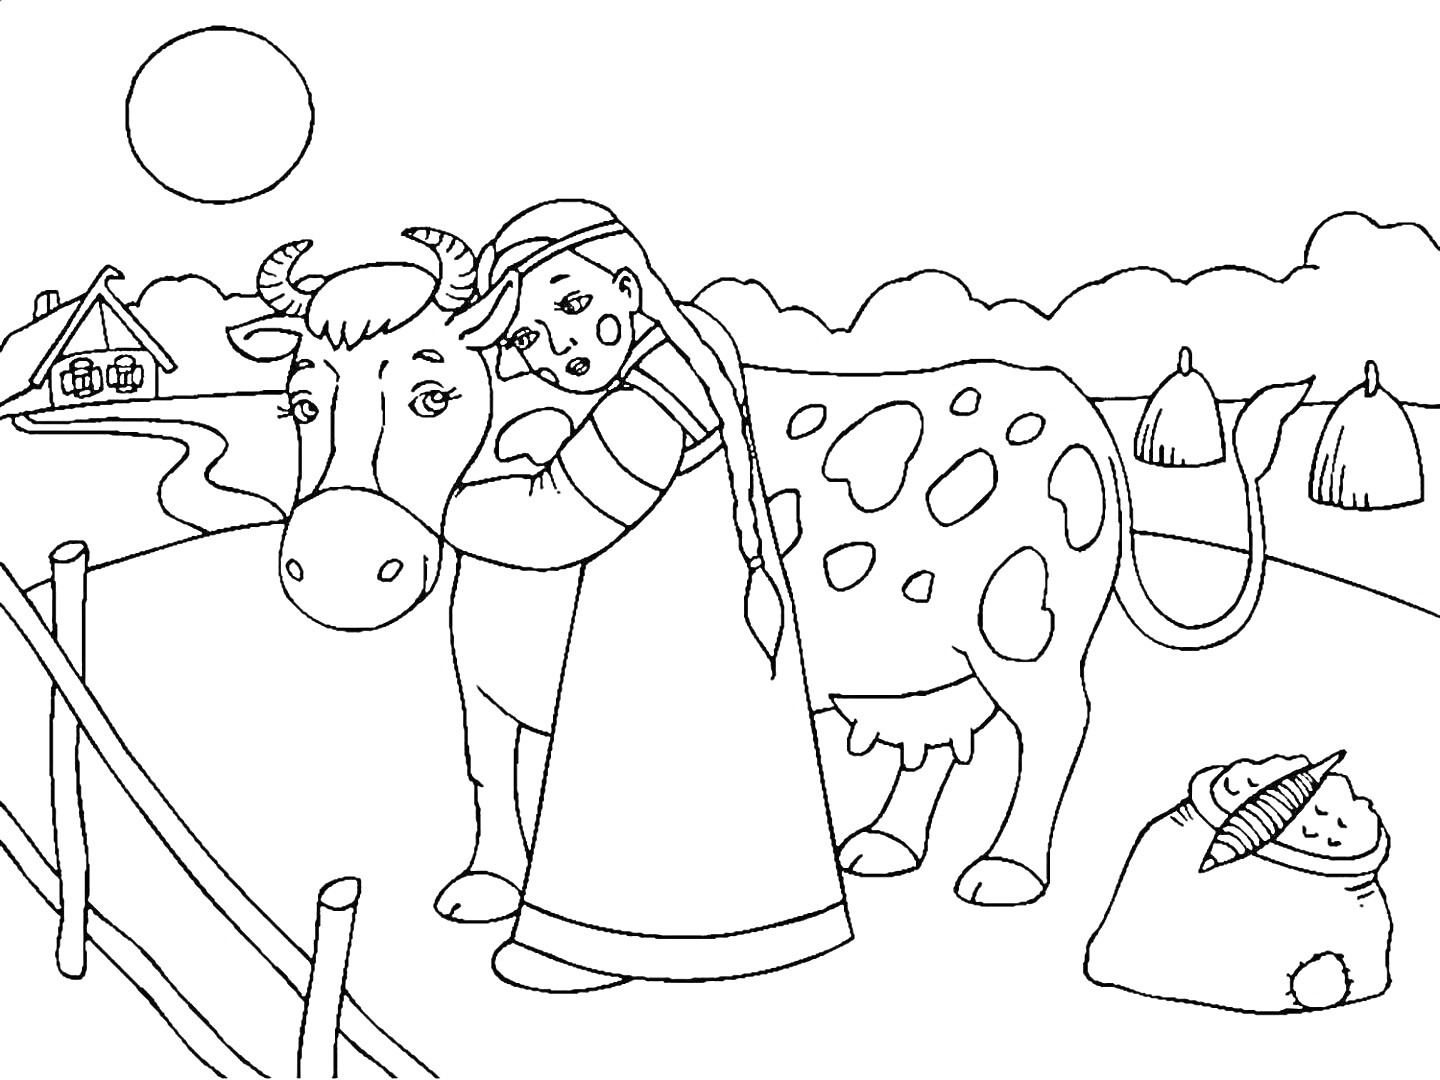 Девочка в национальном костюме обнимает корову на пастбище, рядом стог сена и спутанный веник, на заднем плане дом и солнце